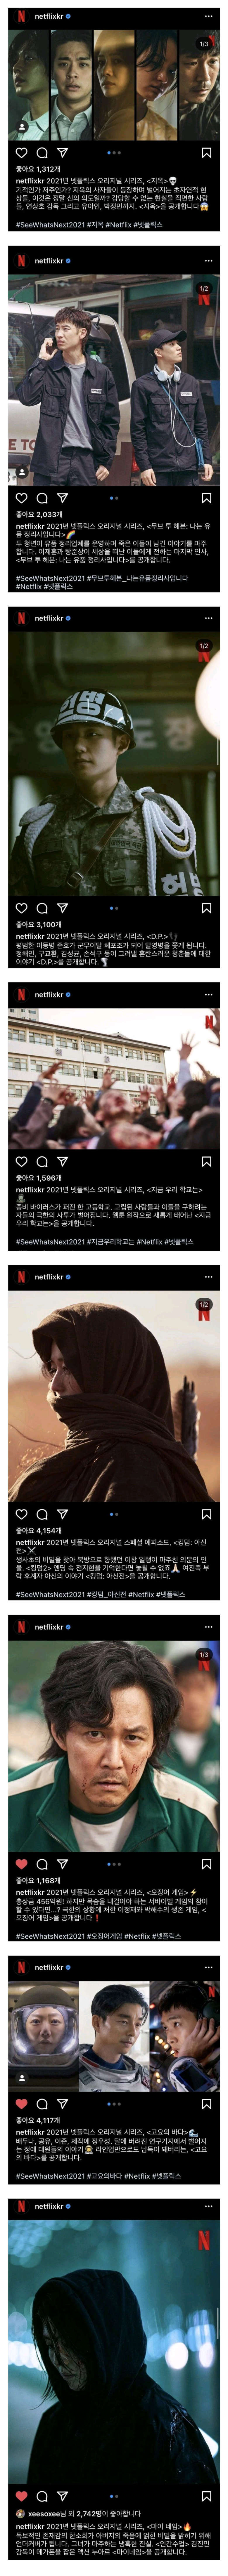 올해 넷플릭스 한국 오리지널, 엄청난 라인업